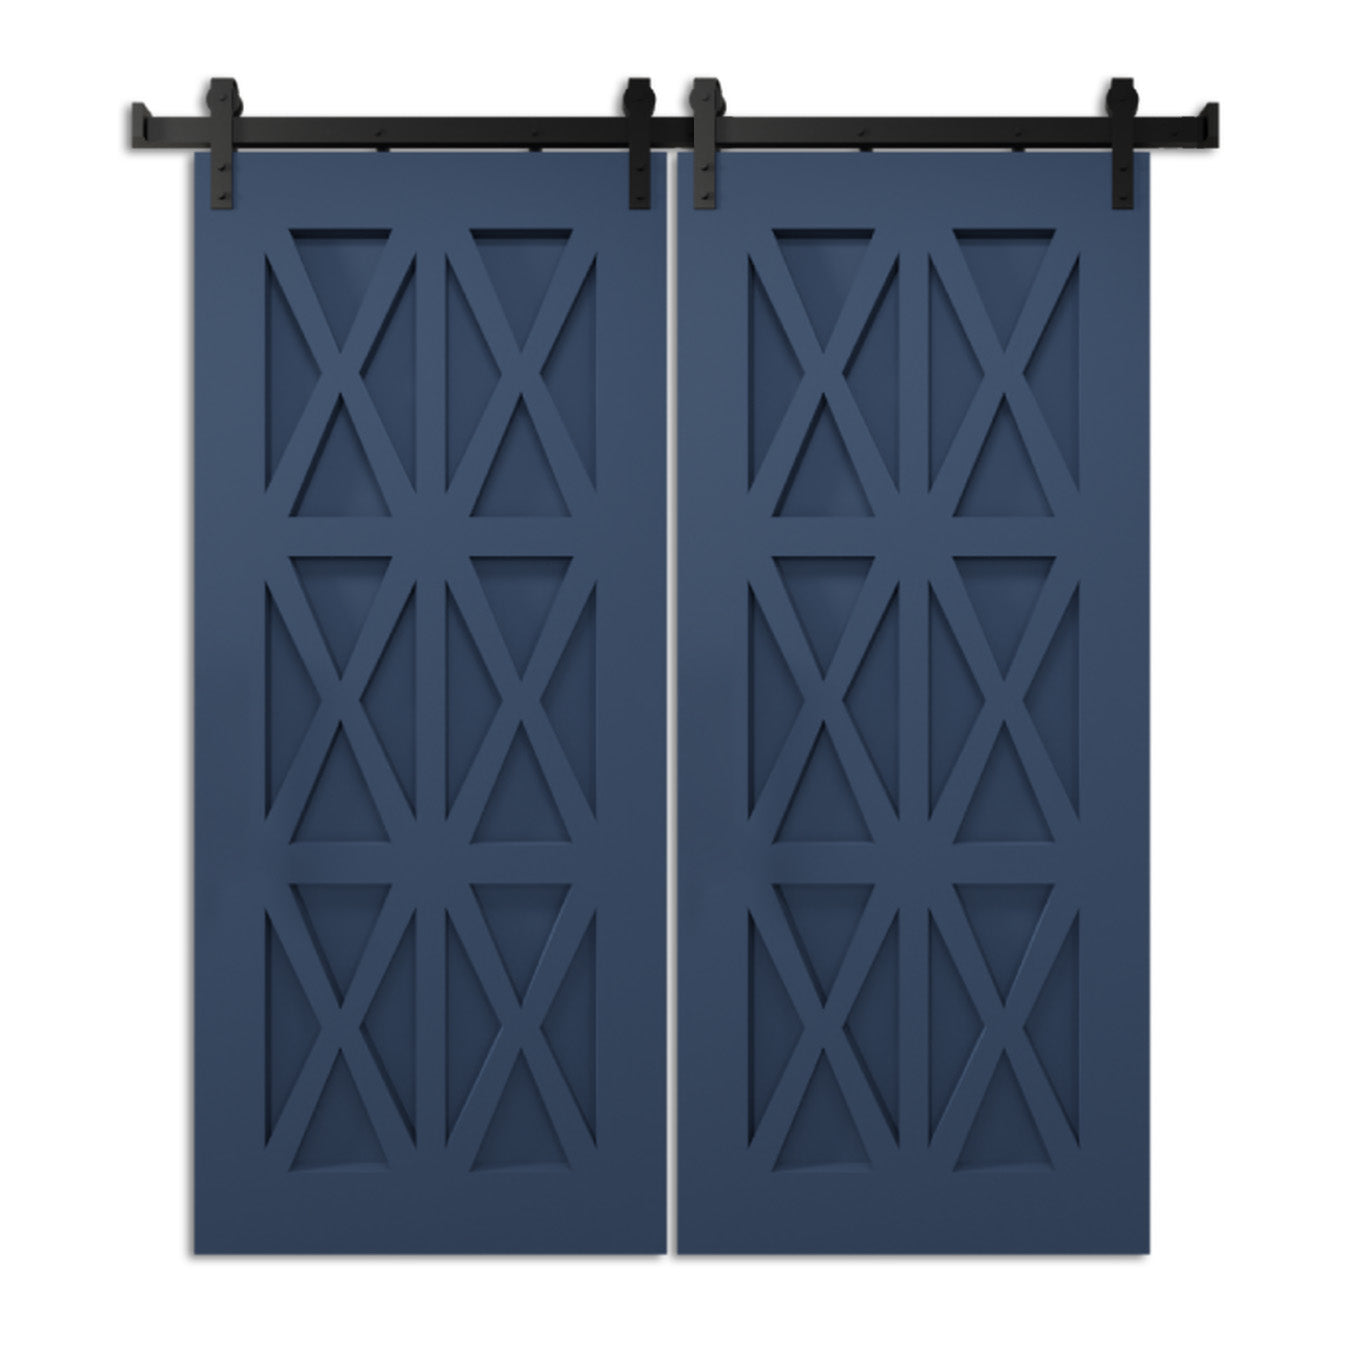 Verulam - Six Panels X Design Interior Sliding Double Barn Door